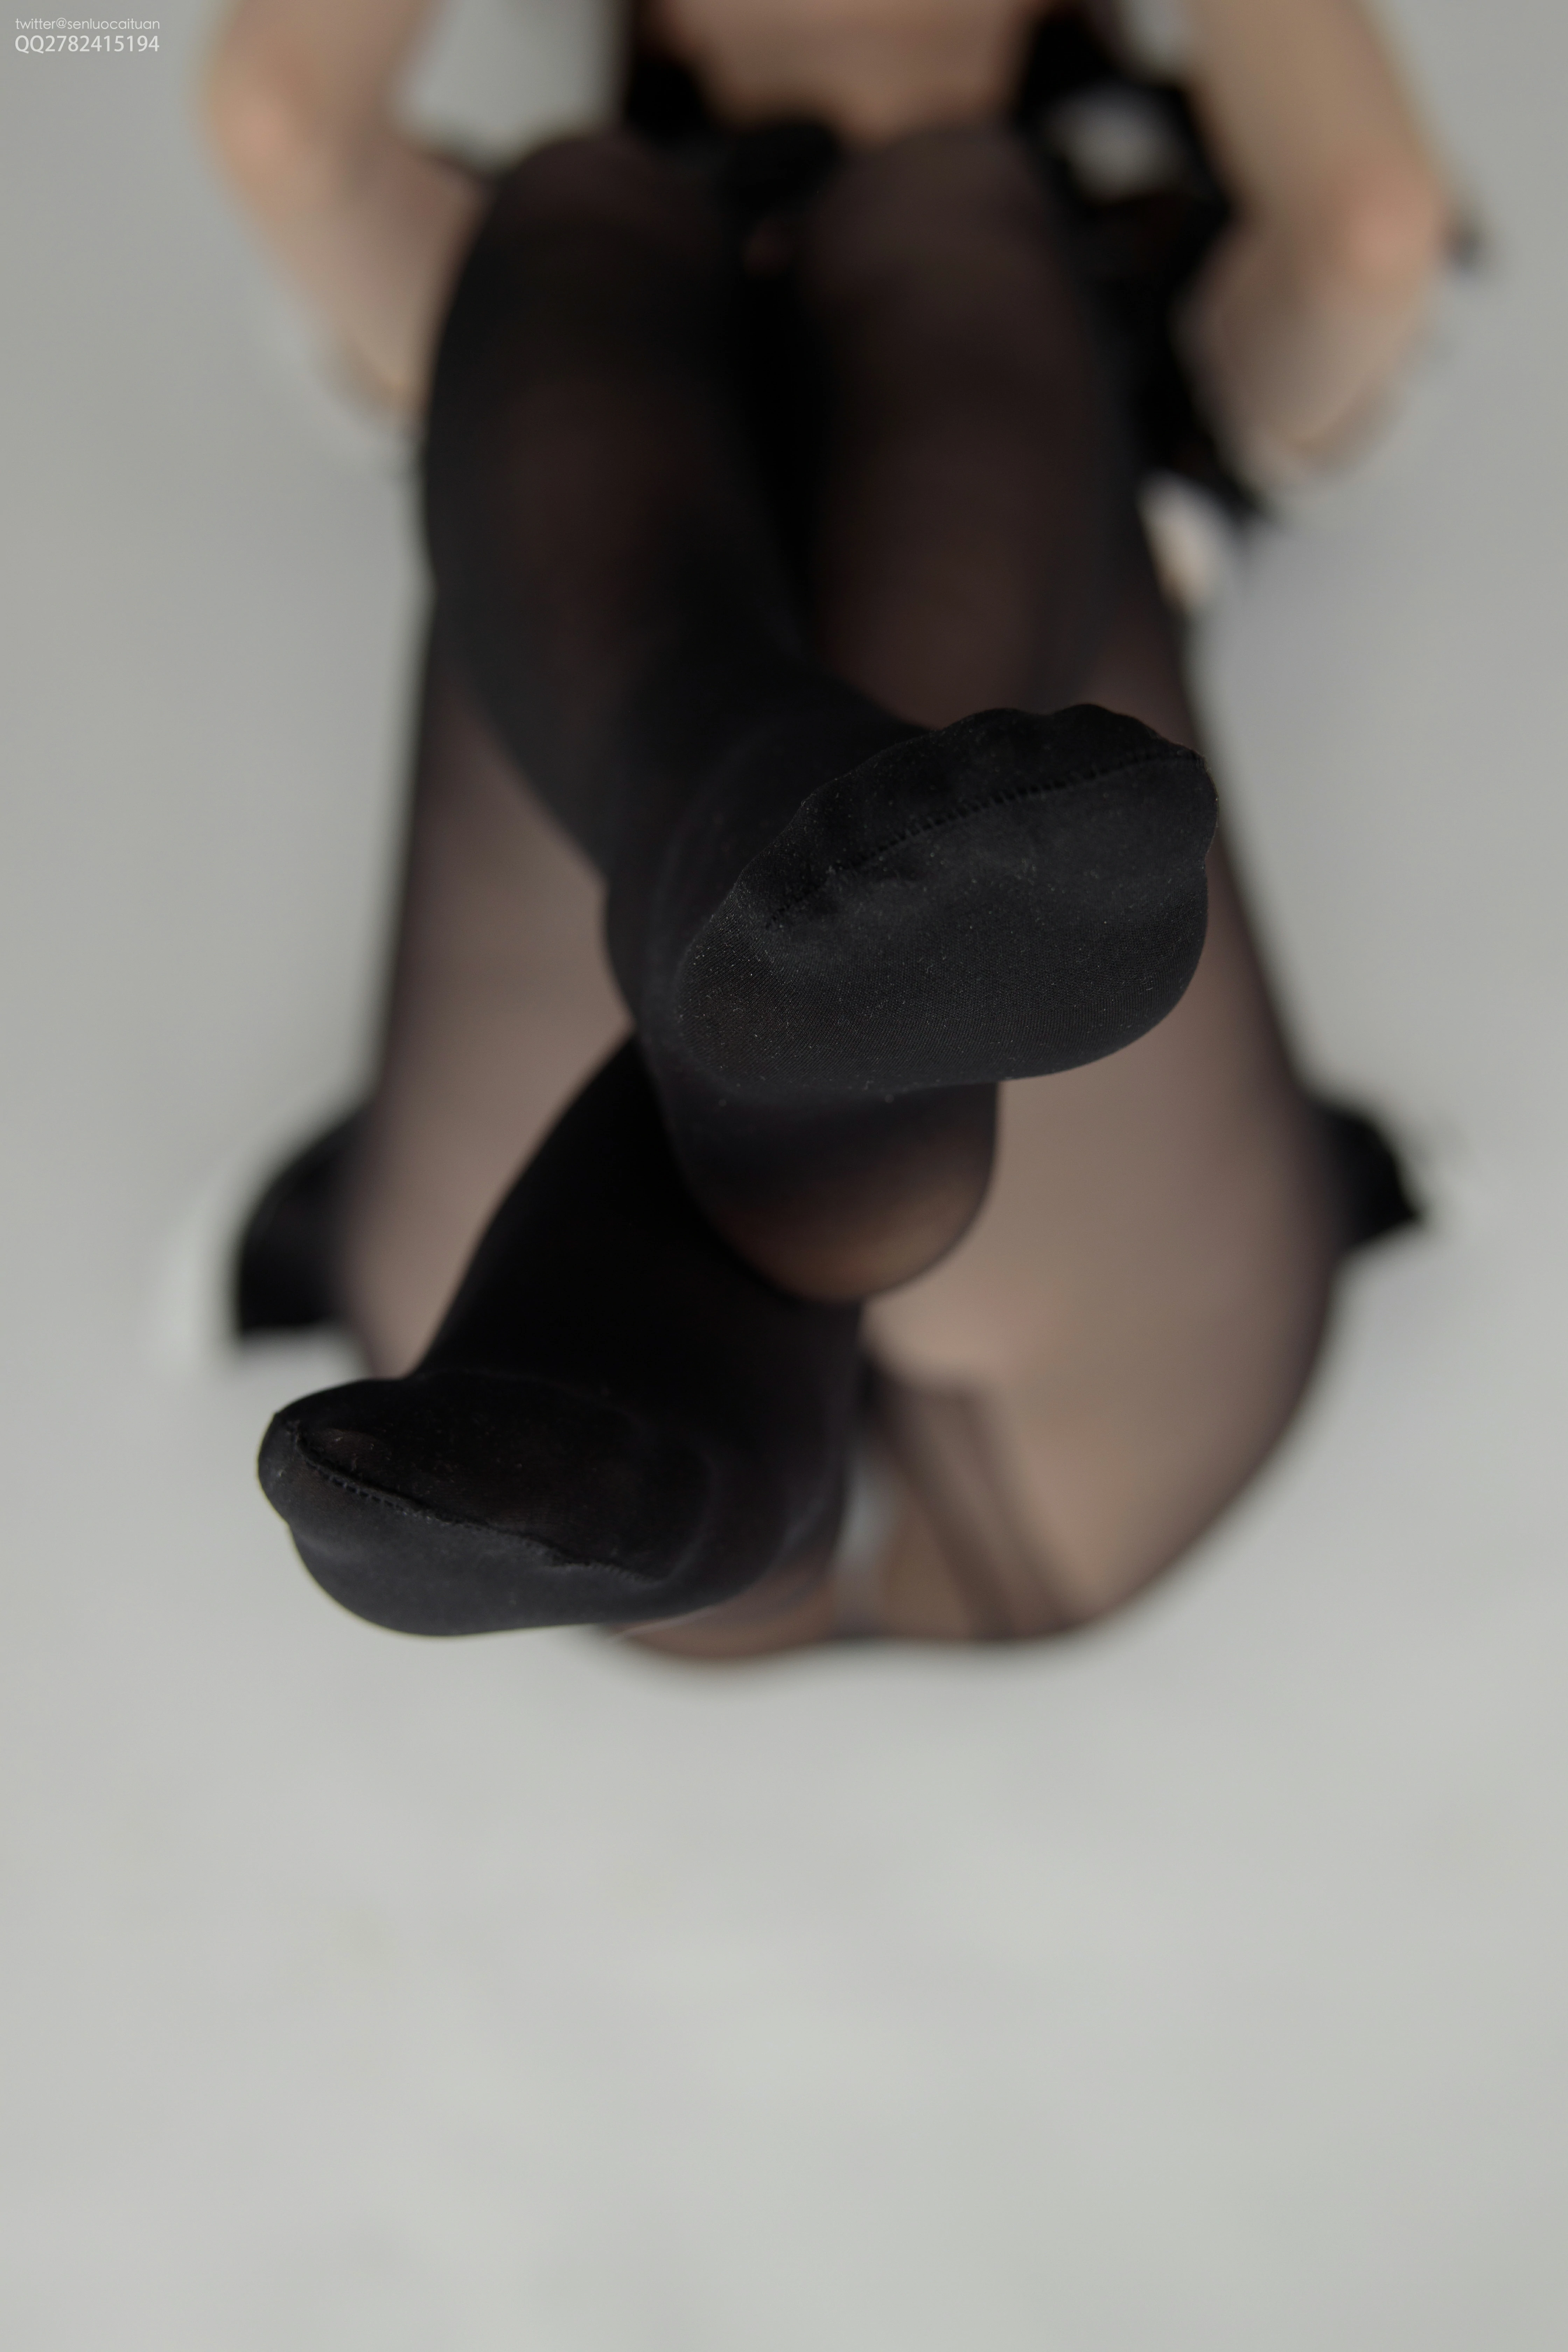 [森萝财团]JKFUN-035 《南半球》 15D黑丝 R16.5 黑色紧身漆皮裙加黑色丝袜美腿性感私房写真集,